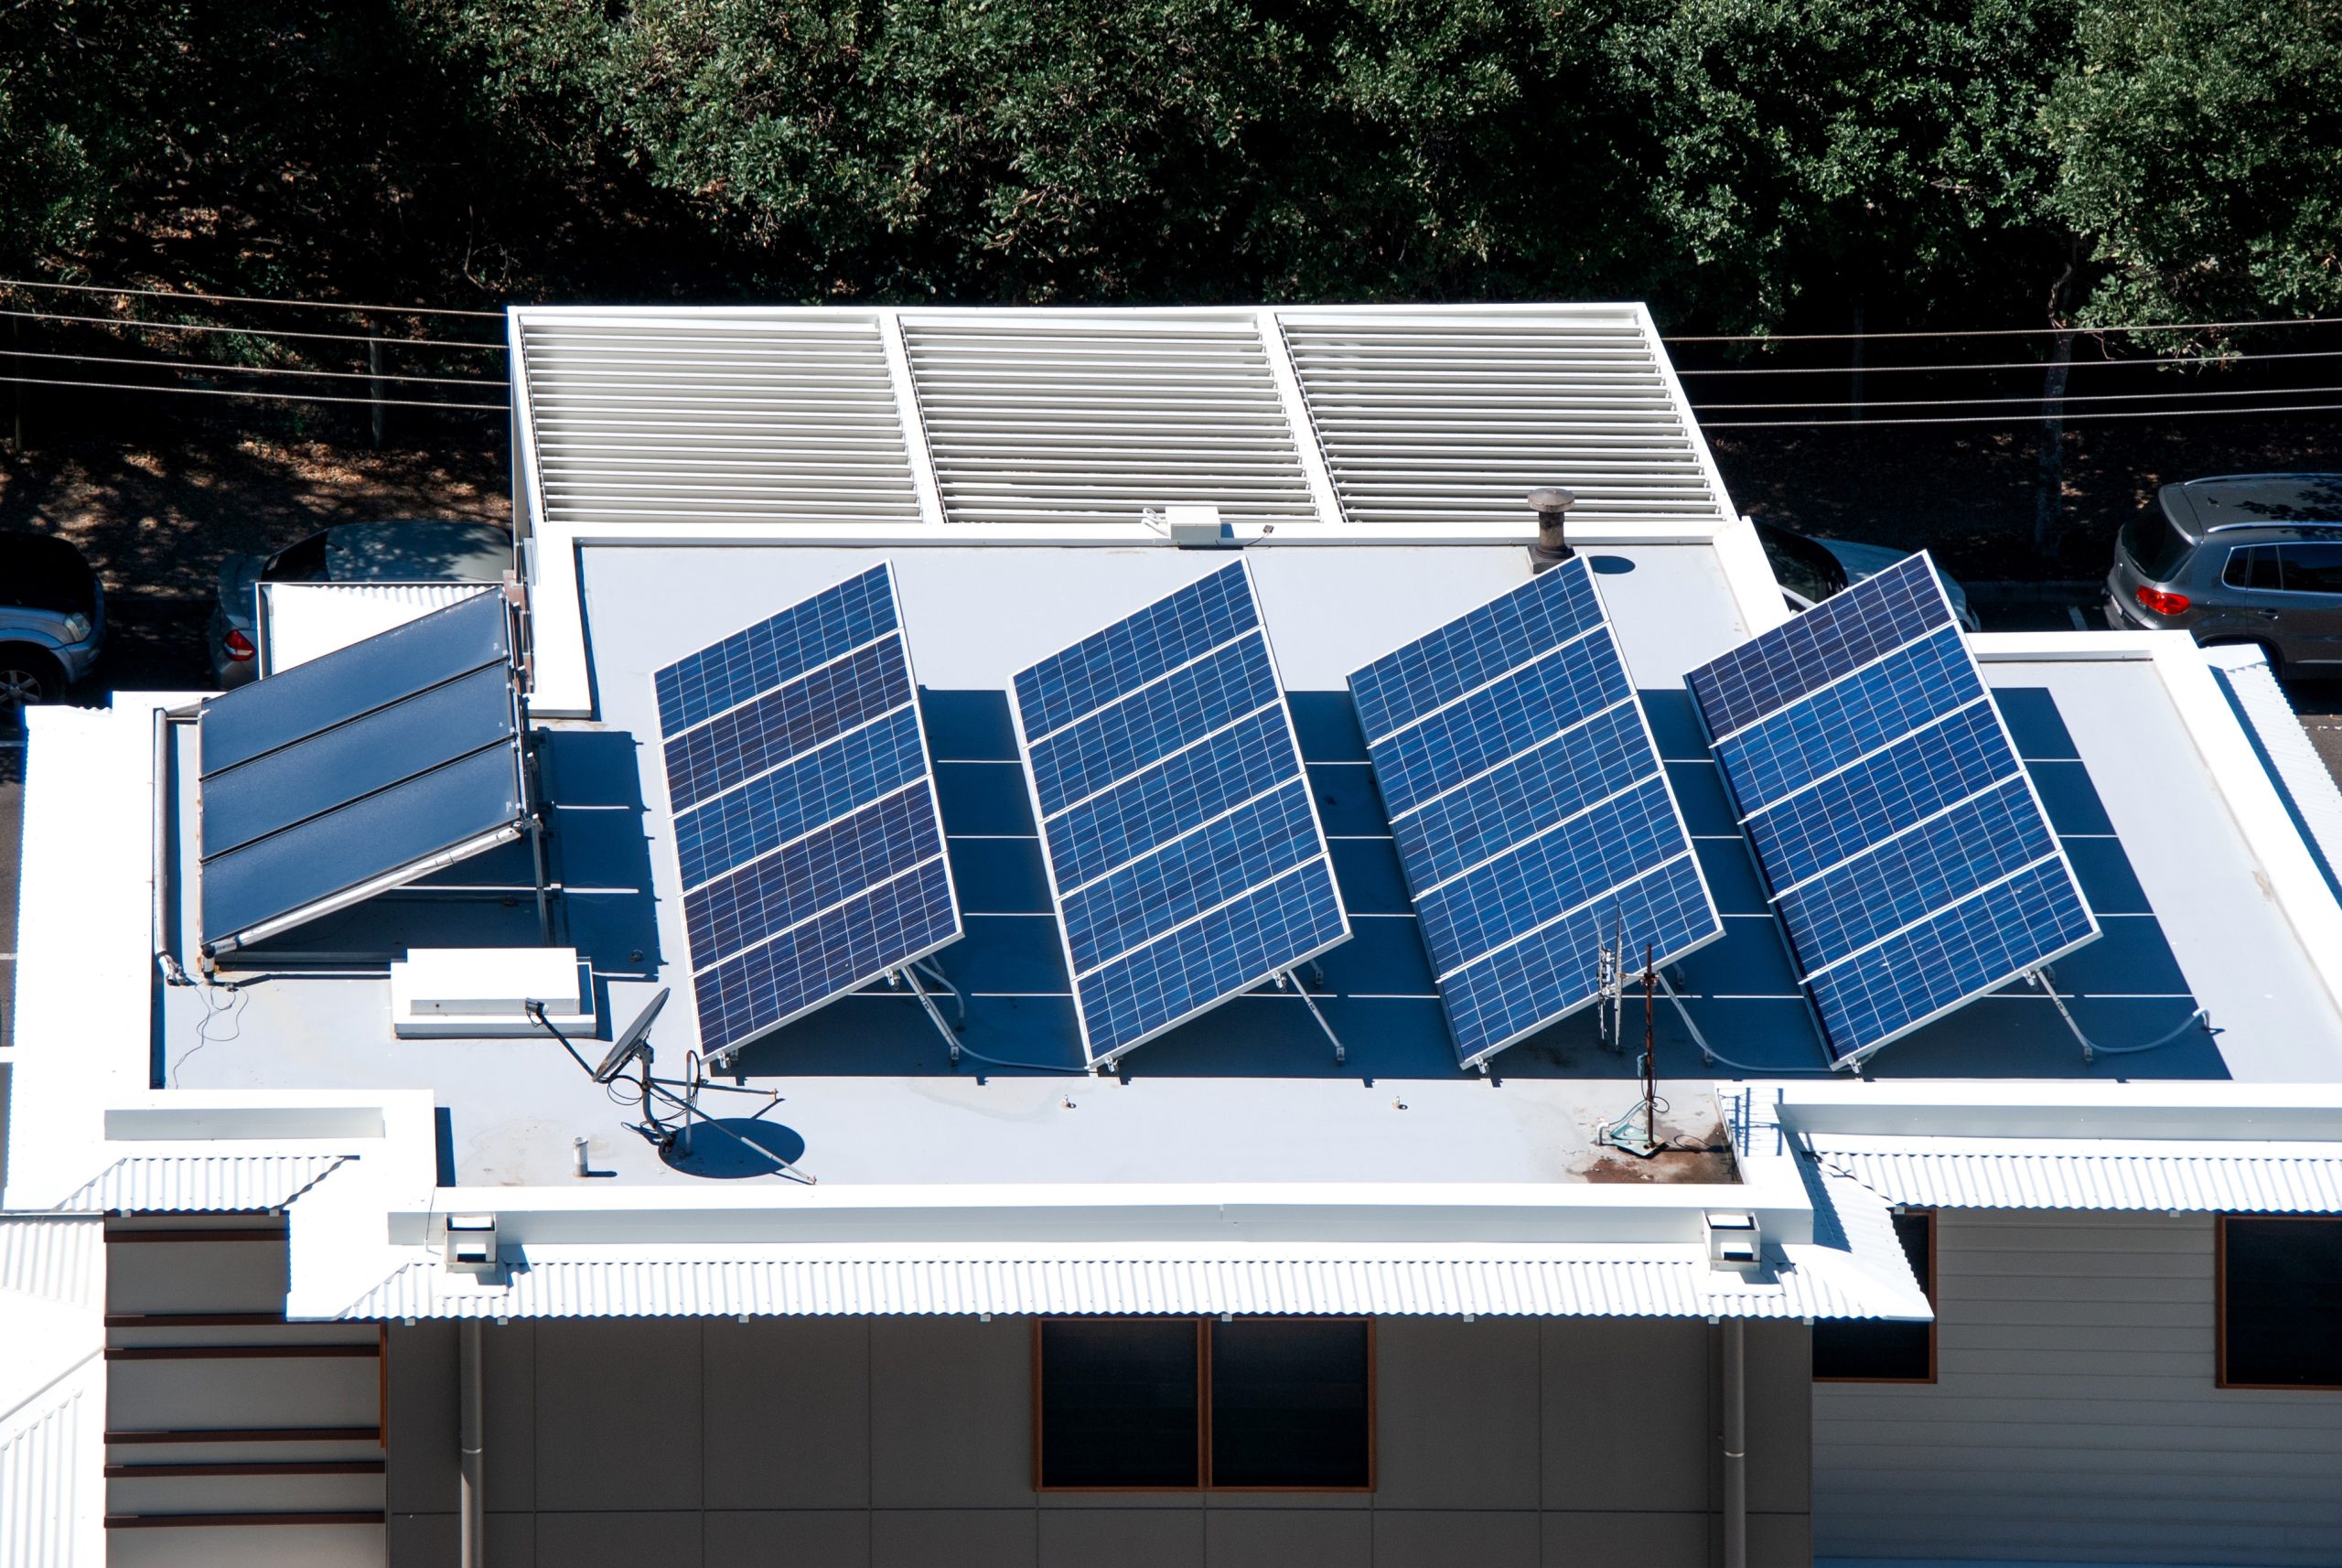 Das Terrassendach kann zum Stromlieferanten werden und so Geld sparen und die Umwelt schonen. Foto marowl via Envato